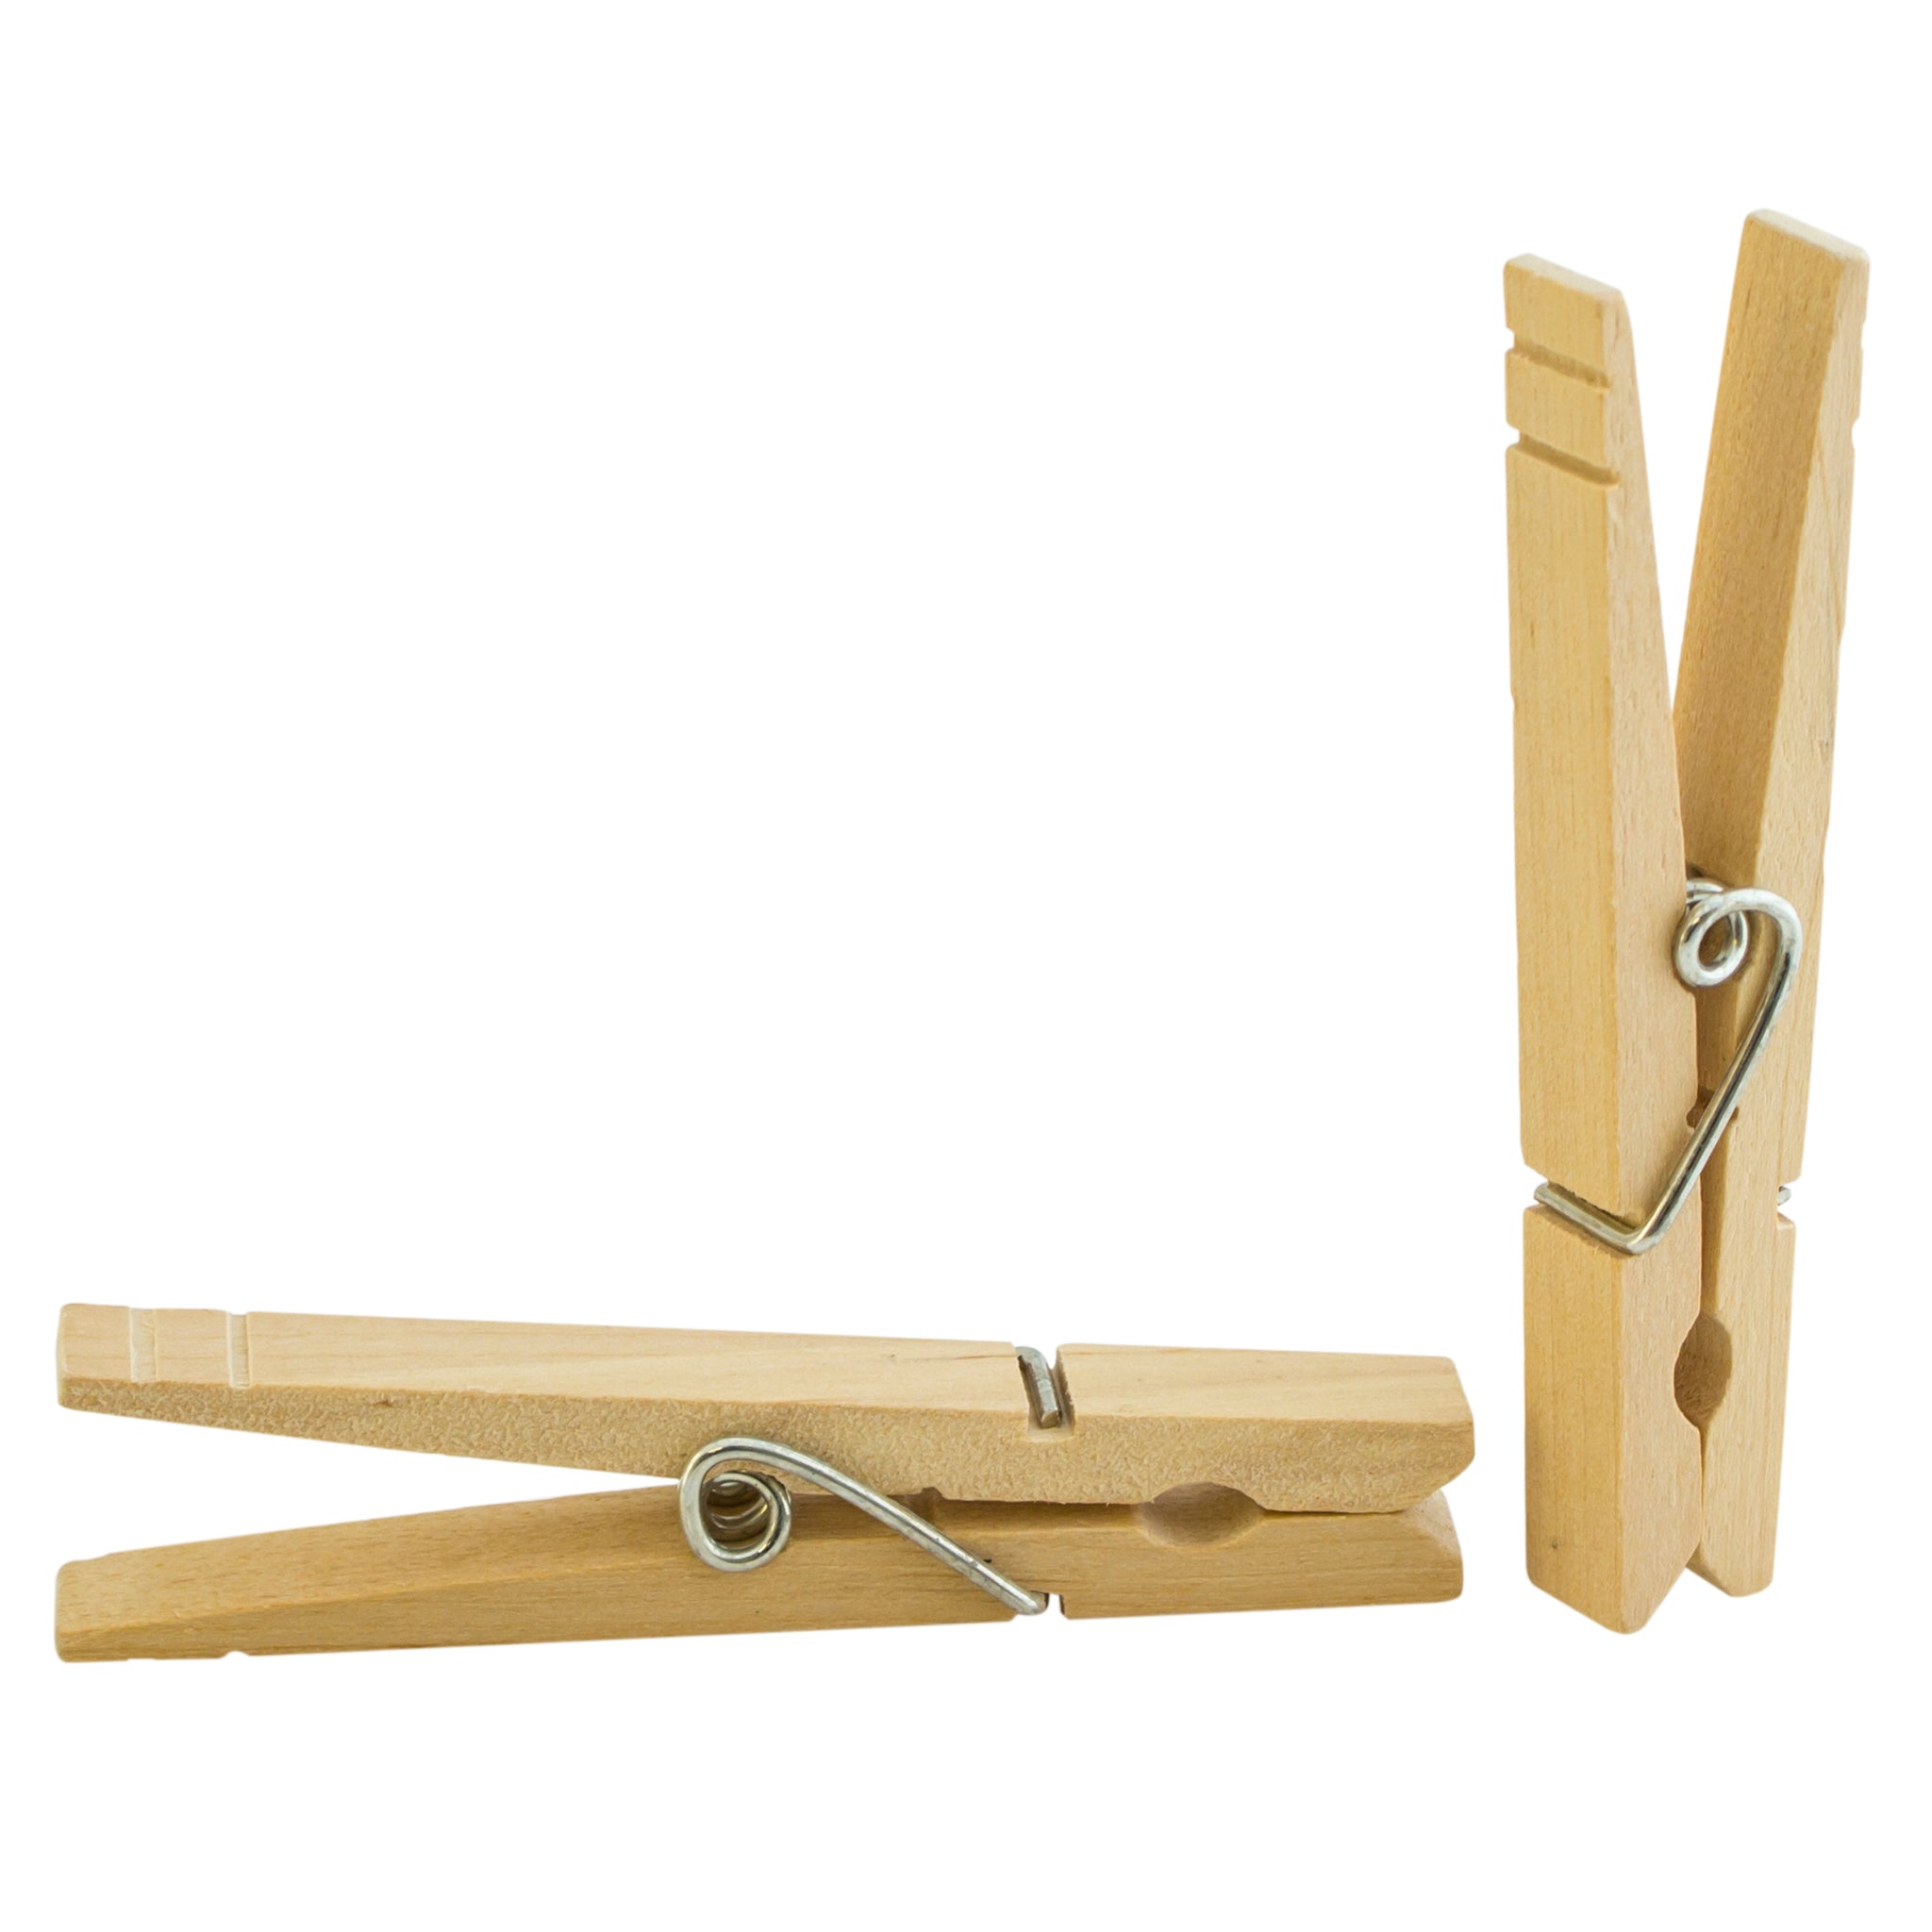 Jumbo Wooden Clothespins - Spellbinders Paper Arts